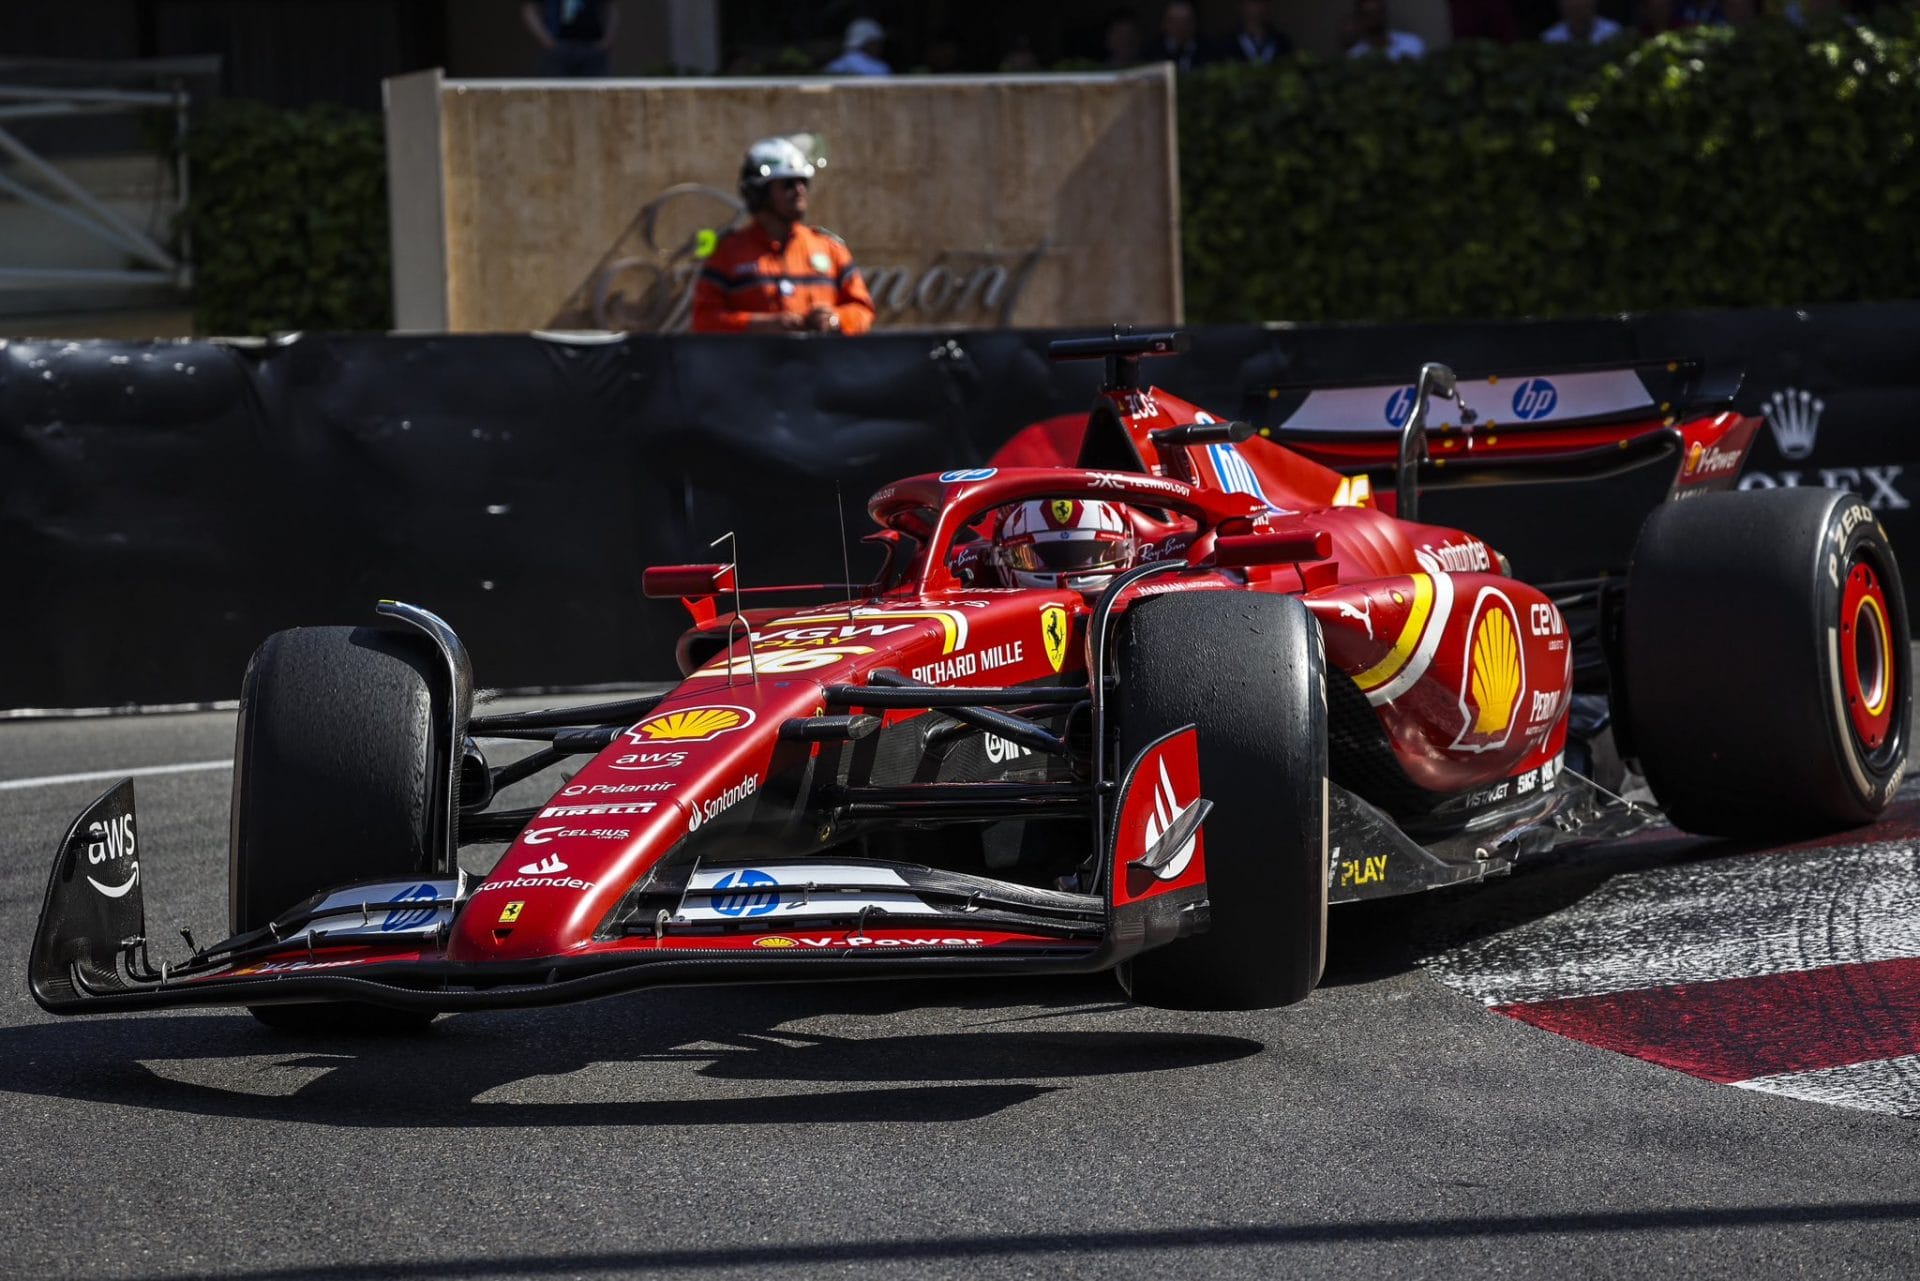 A megható pillanat: Leclerc könnyei az apjáról a verseny közben